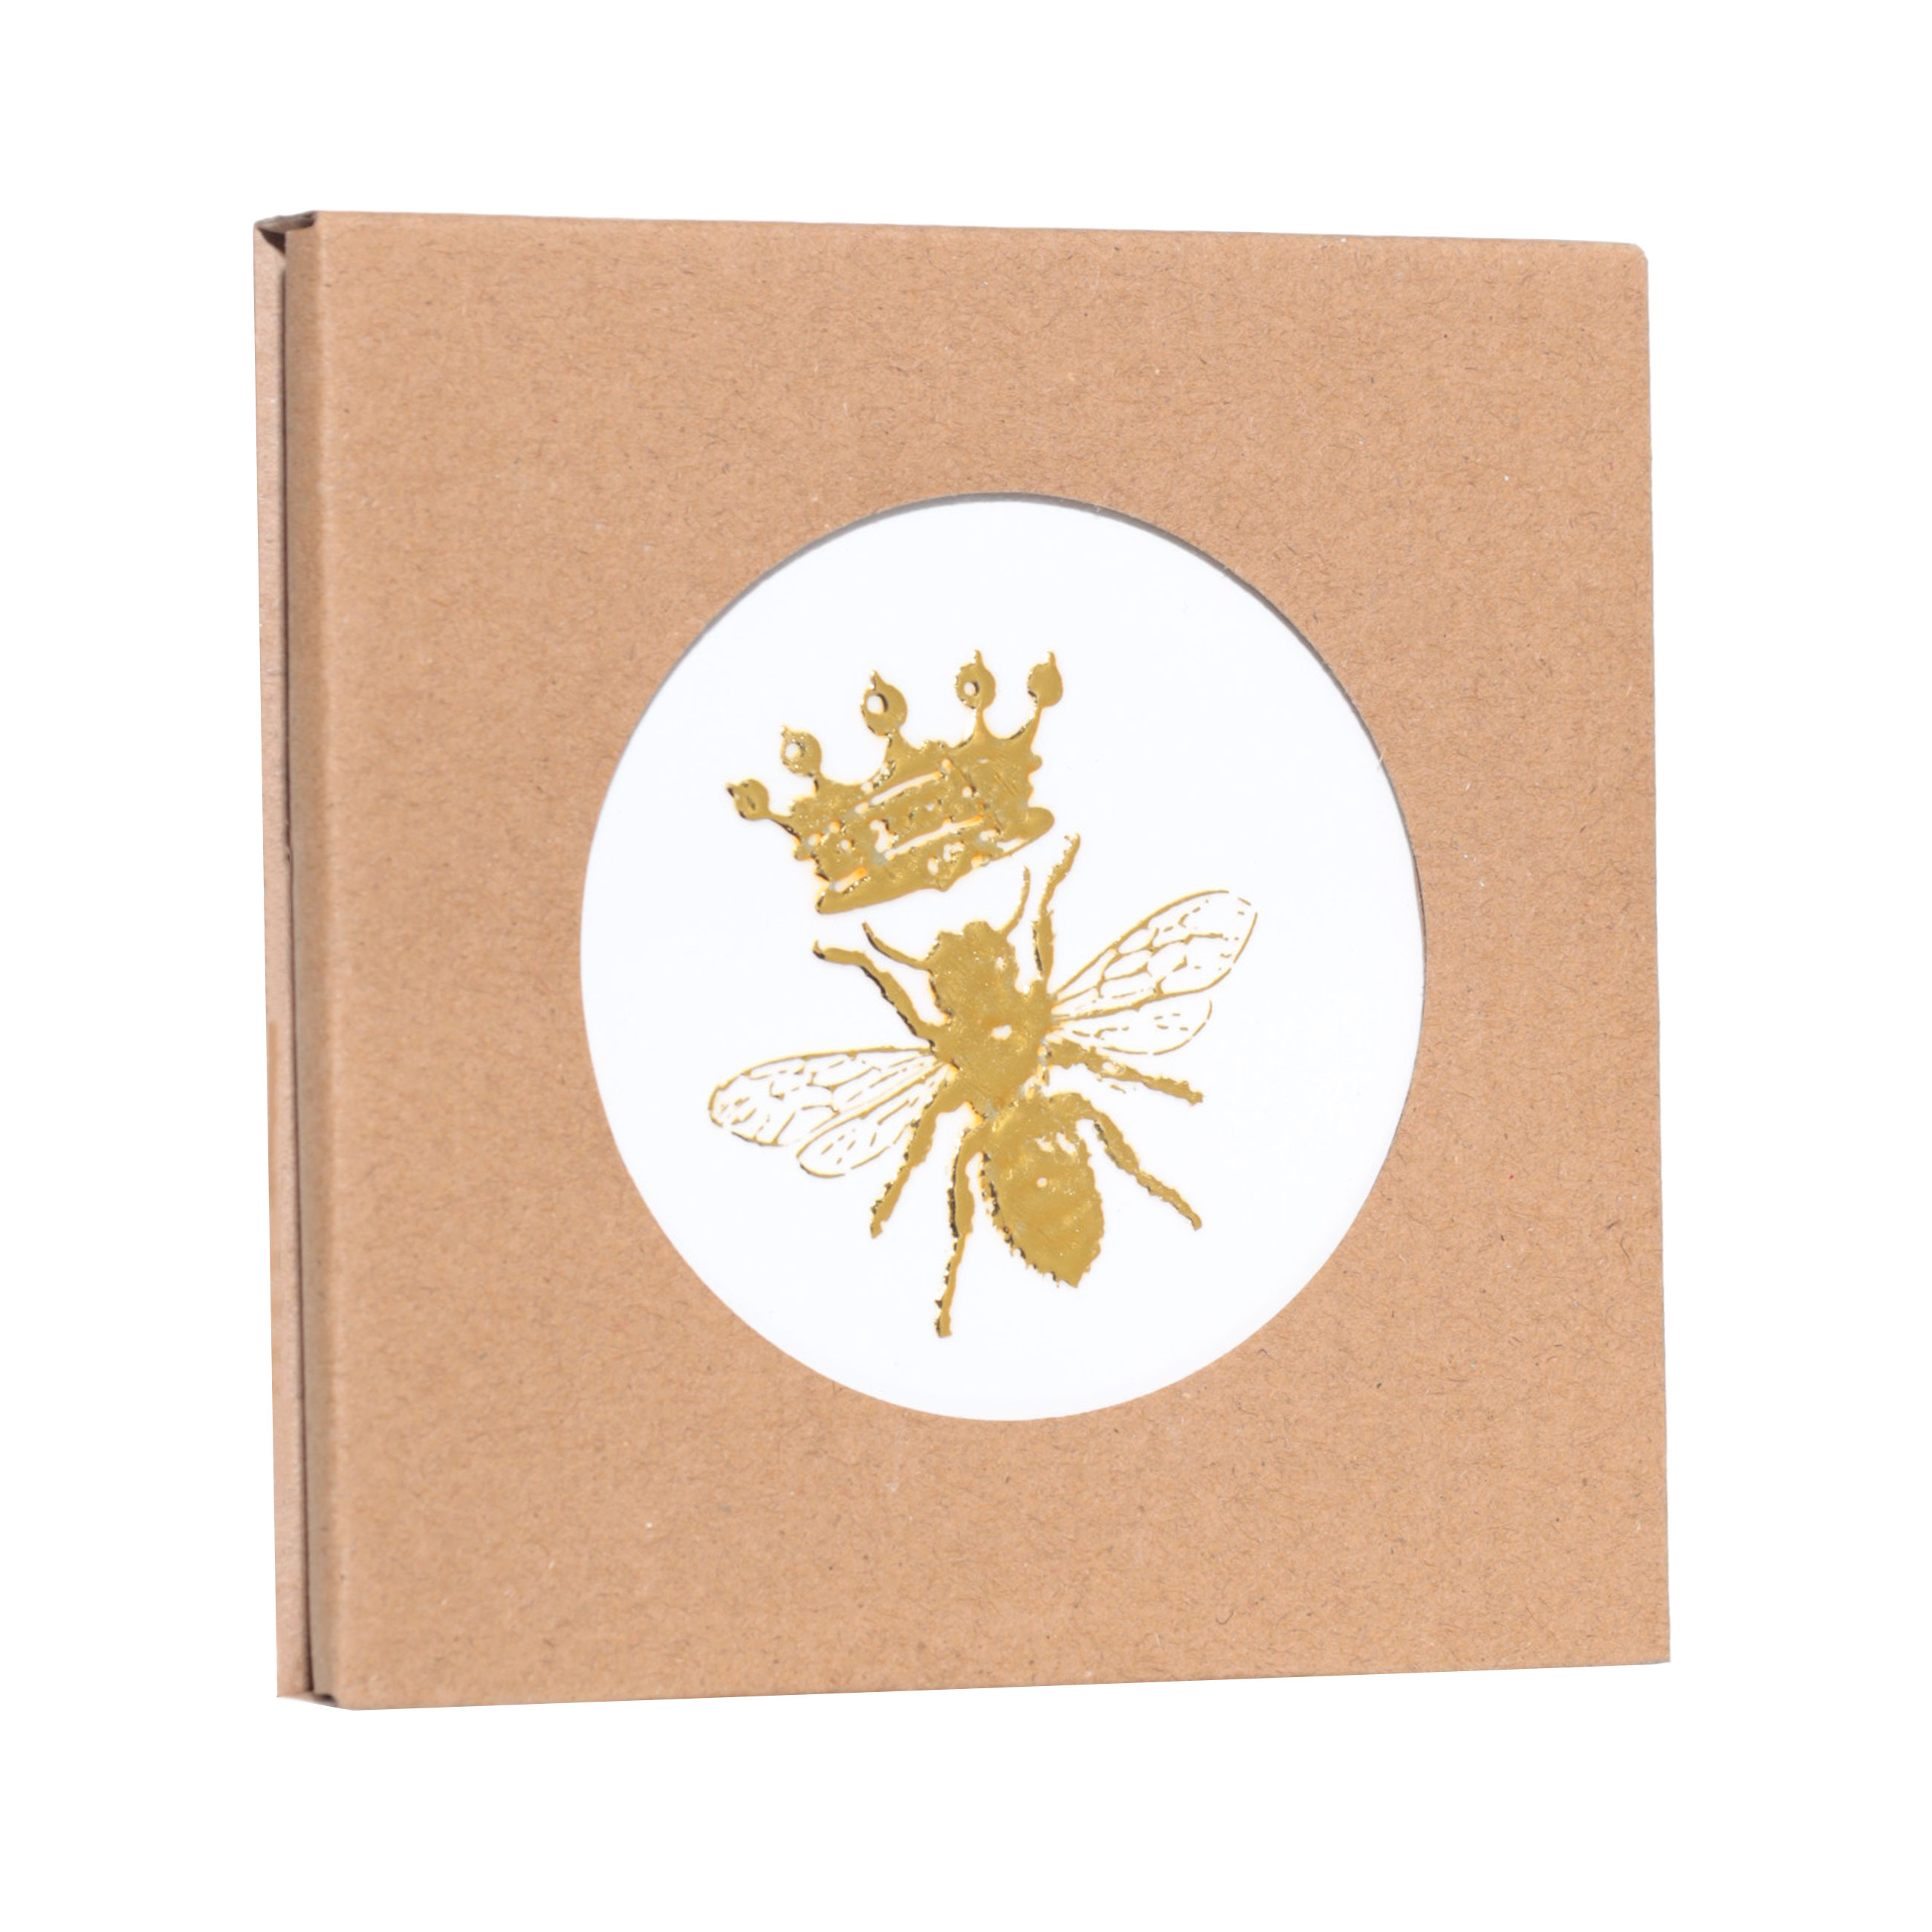 Подставка под кружку, 11 см, керамика/пробка, шестиугольная, белая, Королевская пчела, Honey изображение № 3